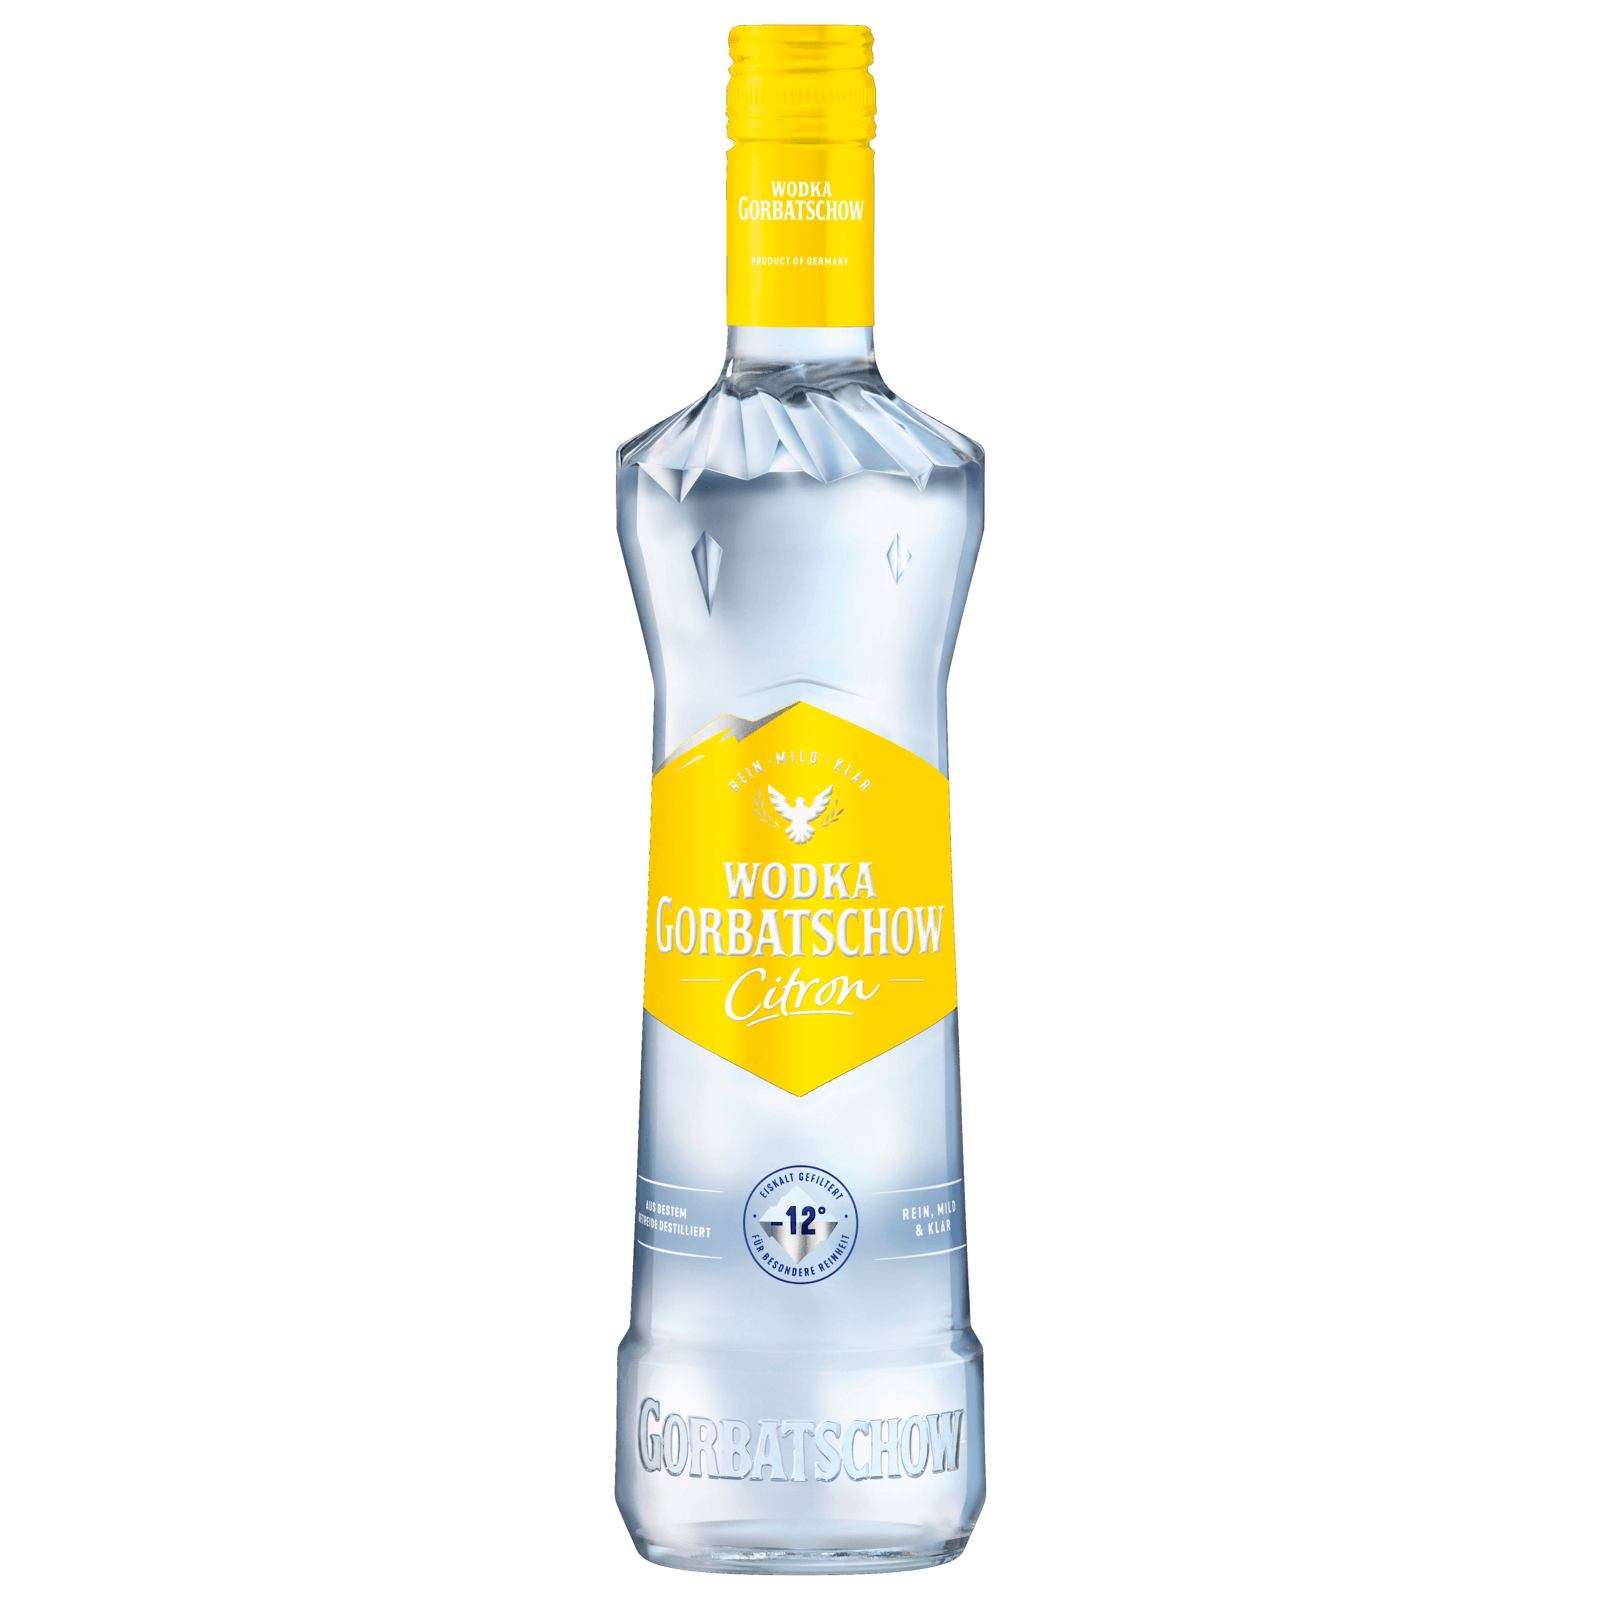 Wodka Gorbatschow Citron 0,7l bei REWE online bestellen!